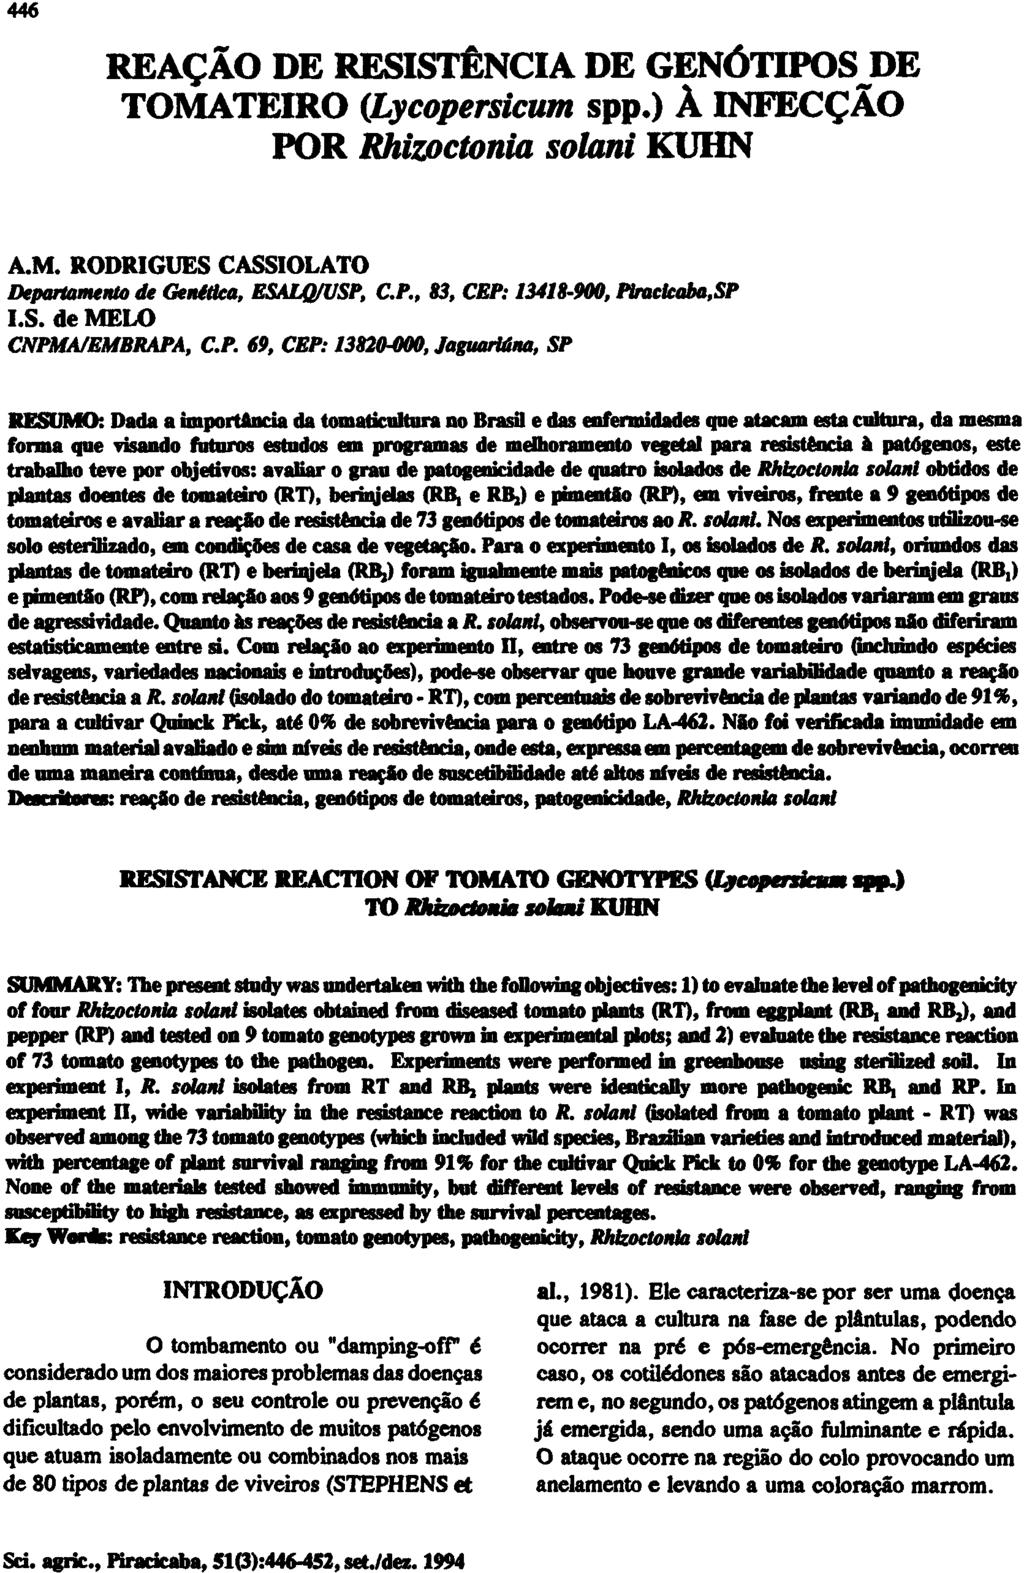 REAÇÃO DE RESISTÊNCIA DE GENÓTIPOS DE TOMATEIRO (Lycopersicum spp.) À INFECÇÃO POR Rhizoctonia solani KUHN A.M. RODRIGUES CASSIOLATO Departamento de Genética, ESALQ/USP, C.P., 83, CEP: 13418-900, Piracicaba, SP I.